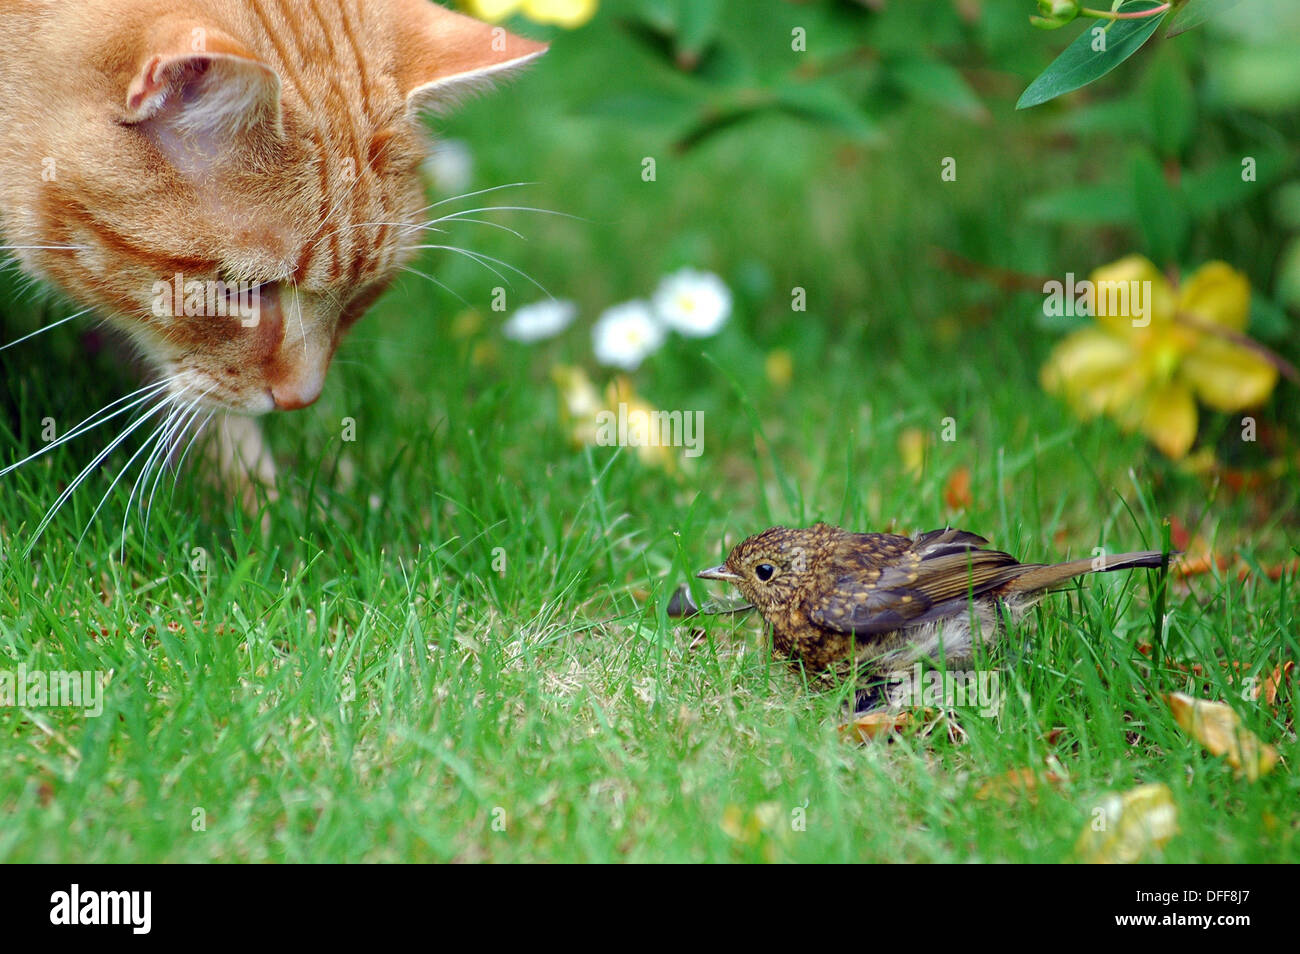 Ginger cat mirando asustado pájaro joven en jardín de césped. Foto de stock